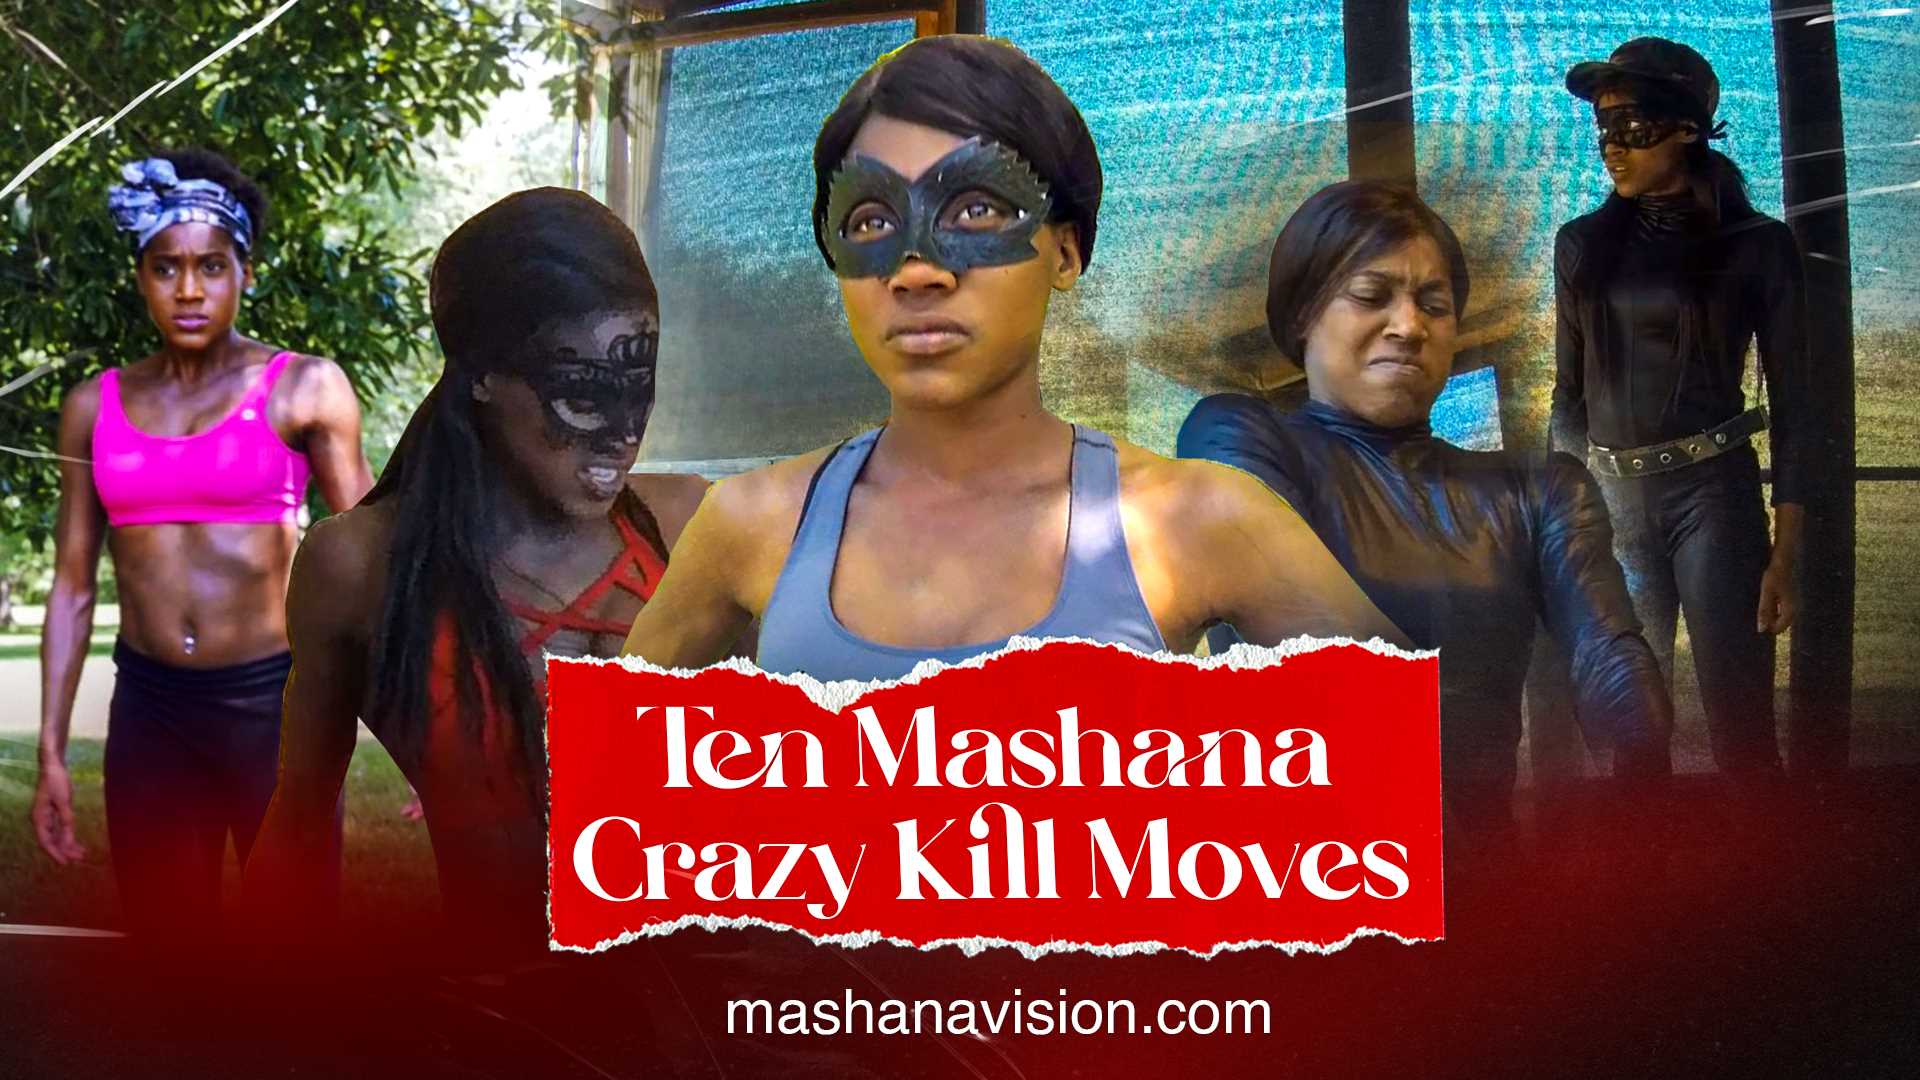 MashanaVision | Mashana Vision | TEN CRAZY KILL MOVES